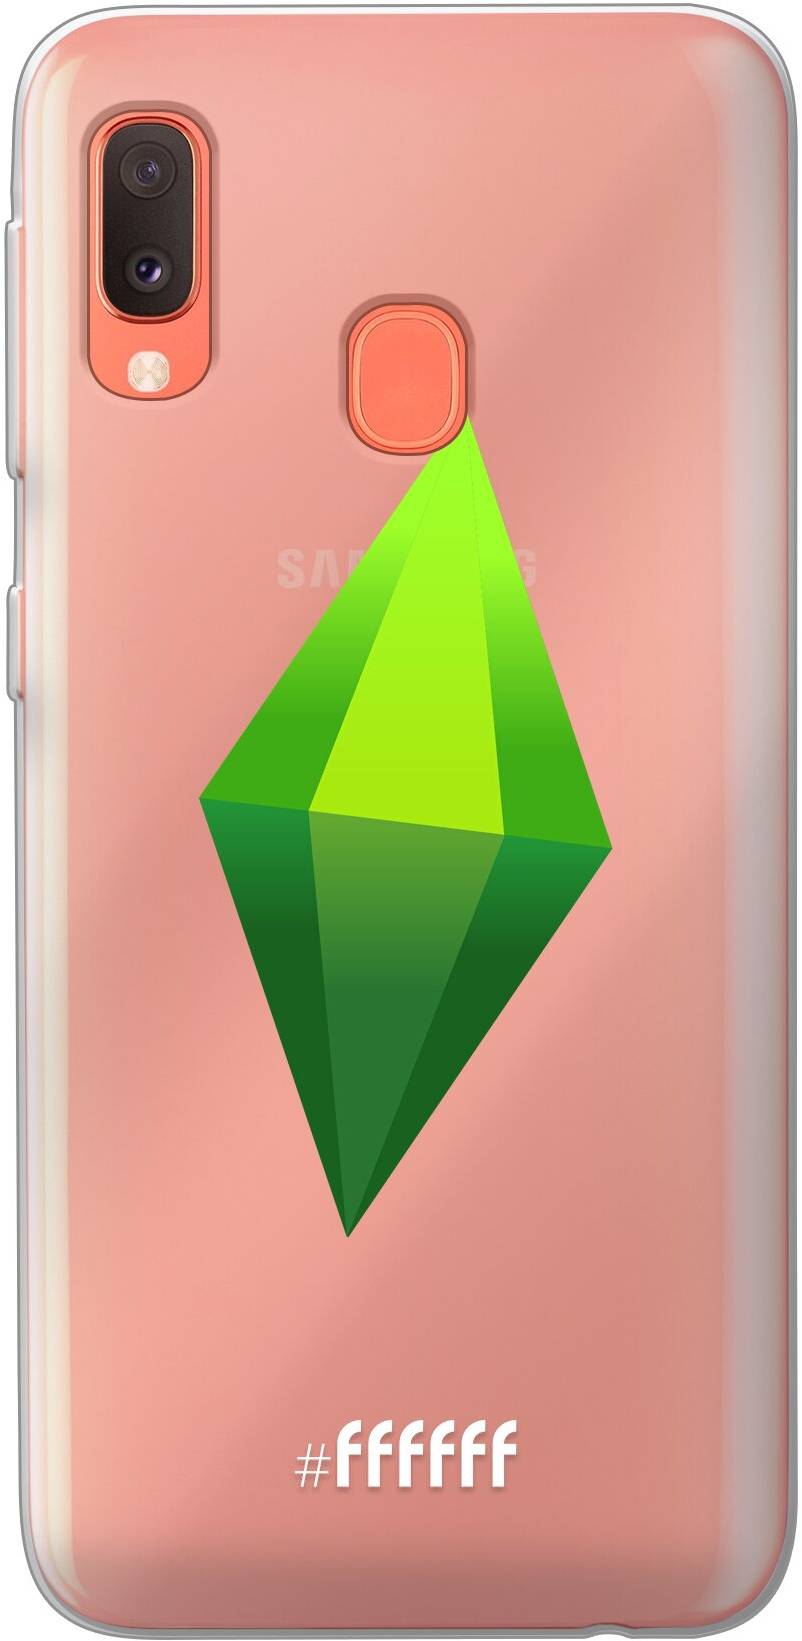 The Sims Galaxy A20e